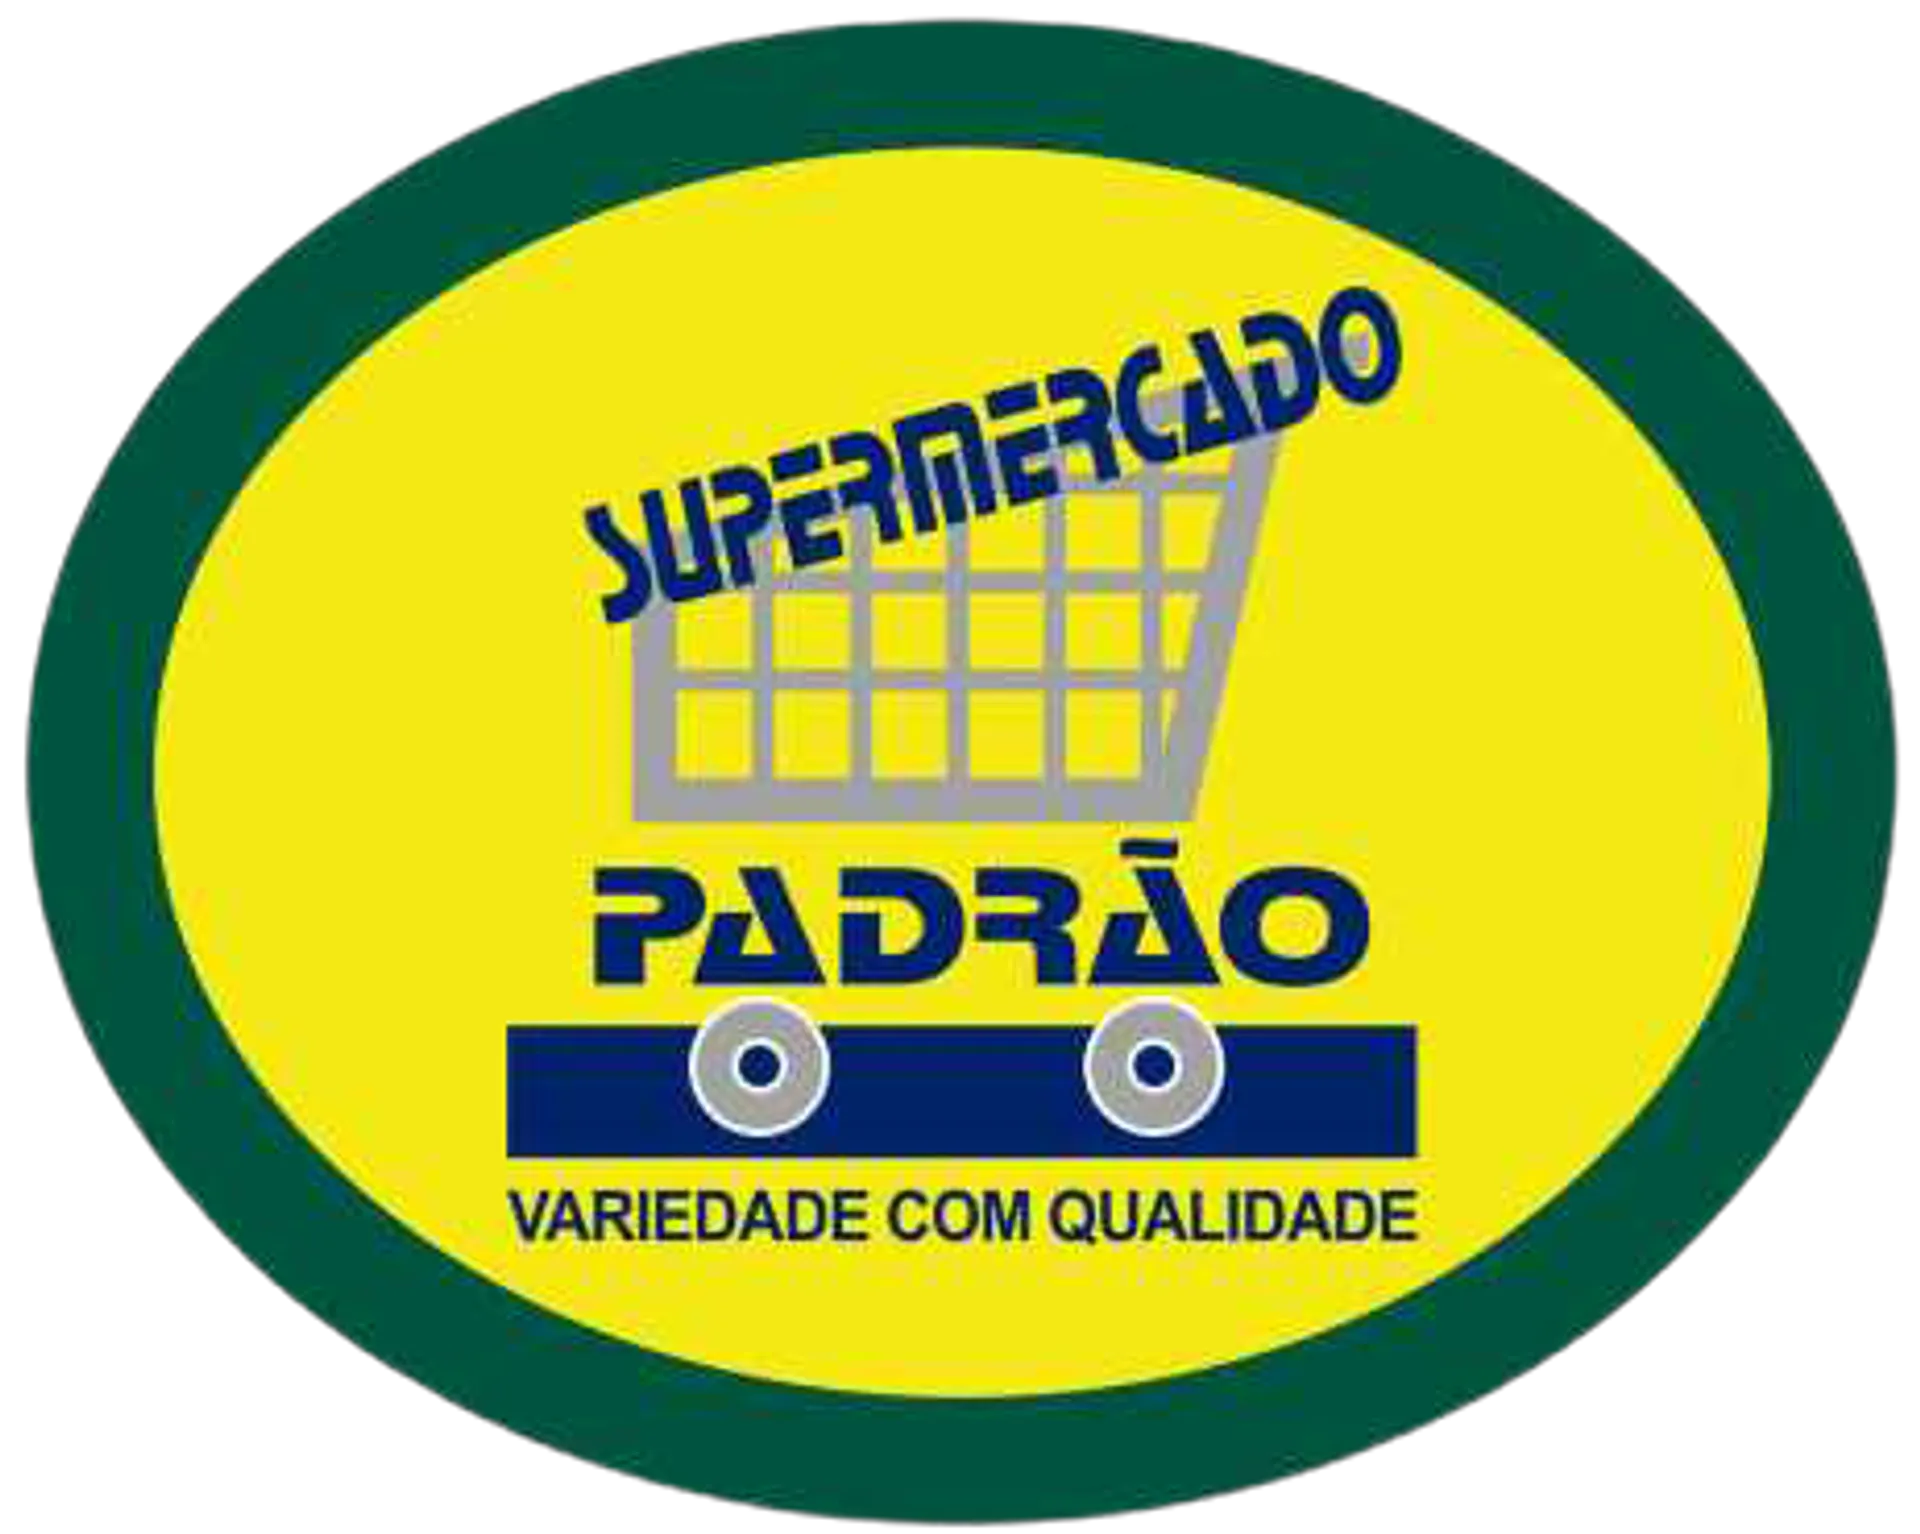 SUPERMERCADO PADRÃO logo de catálogo